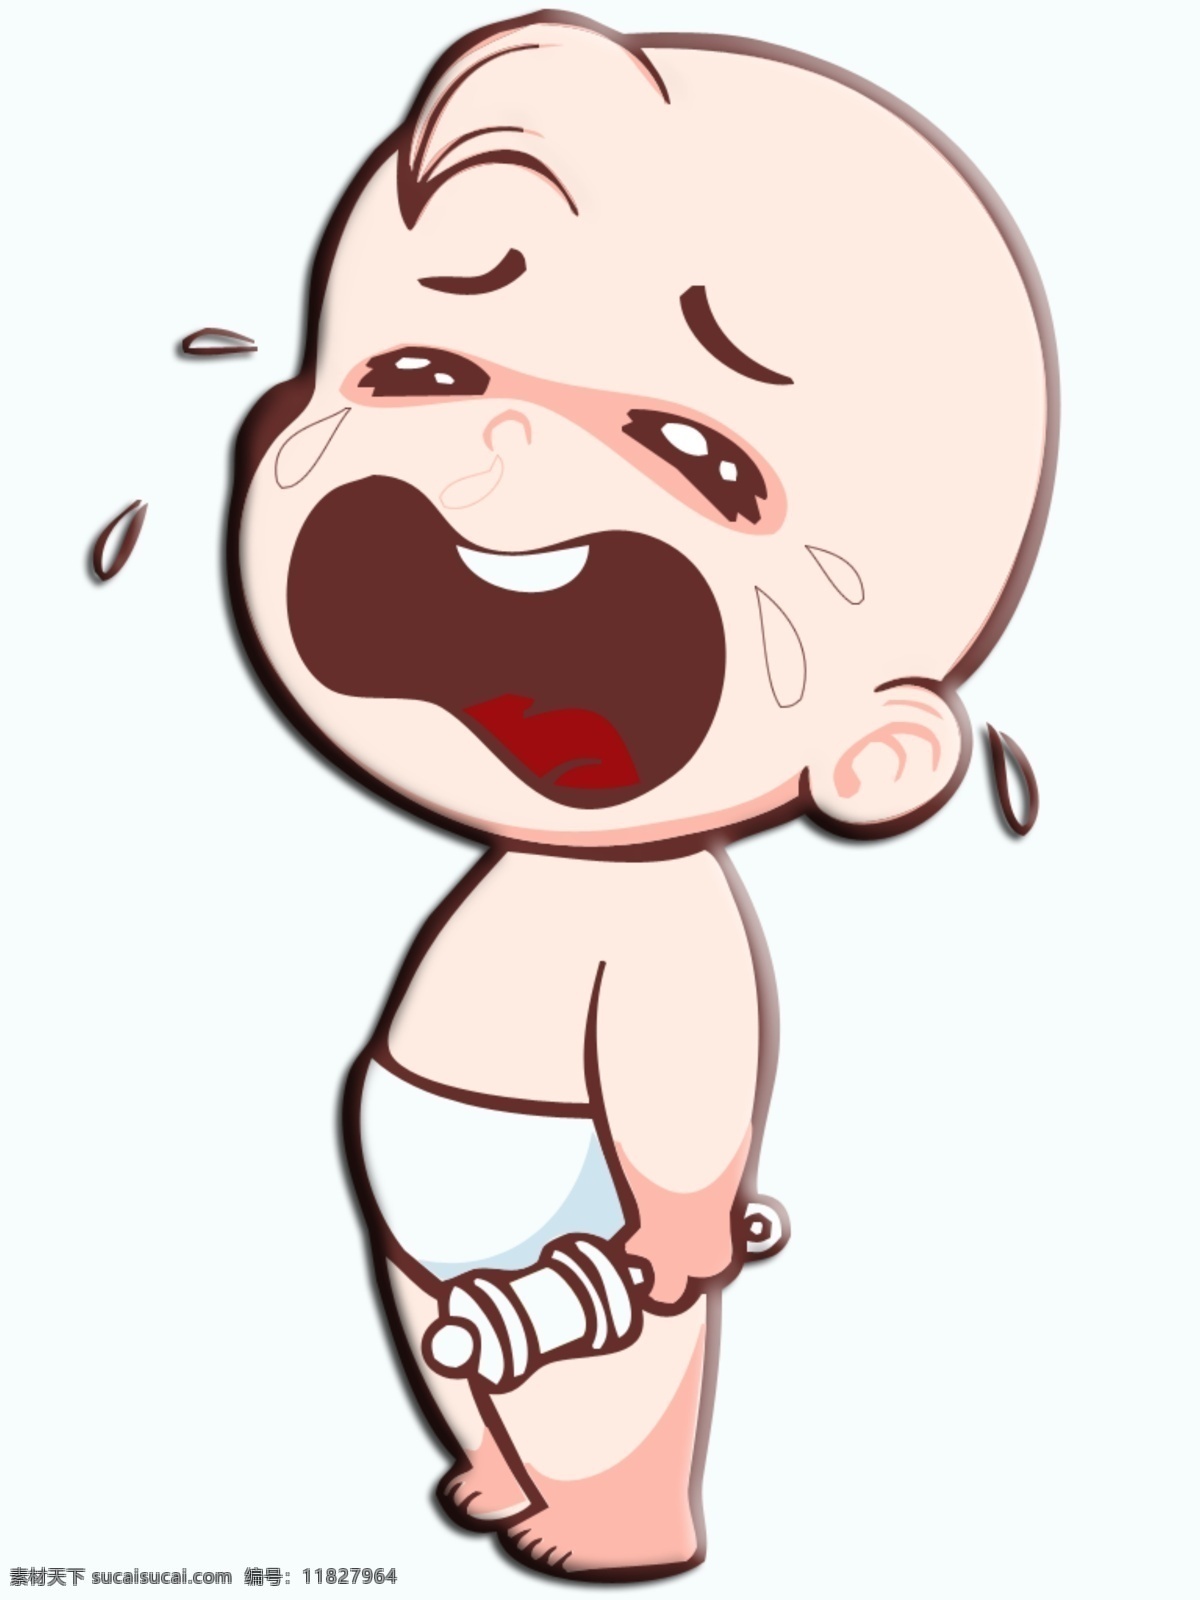 哭泣婴儿 婴儿图片 宝宝图片 哭泣宝宝 宝宝大哭图片 卡通人物 动漫动画 动漫人物